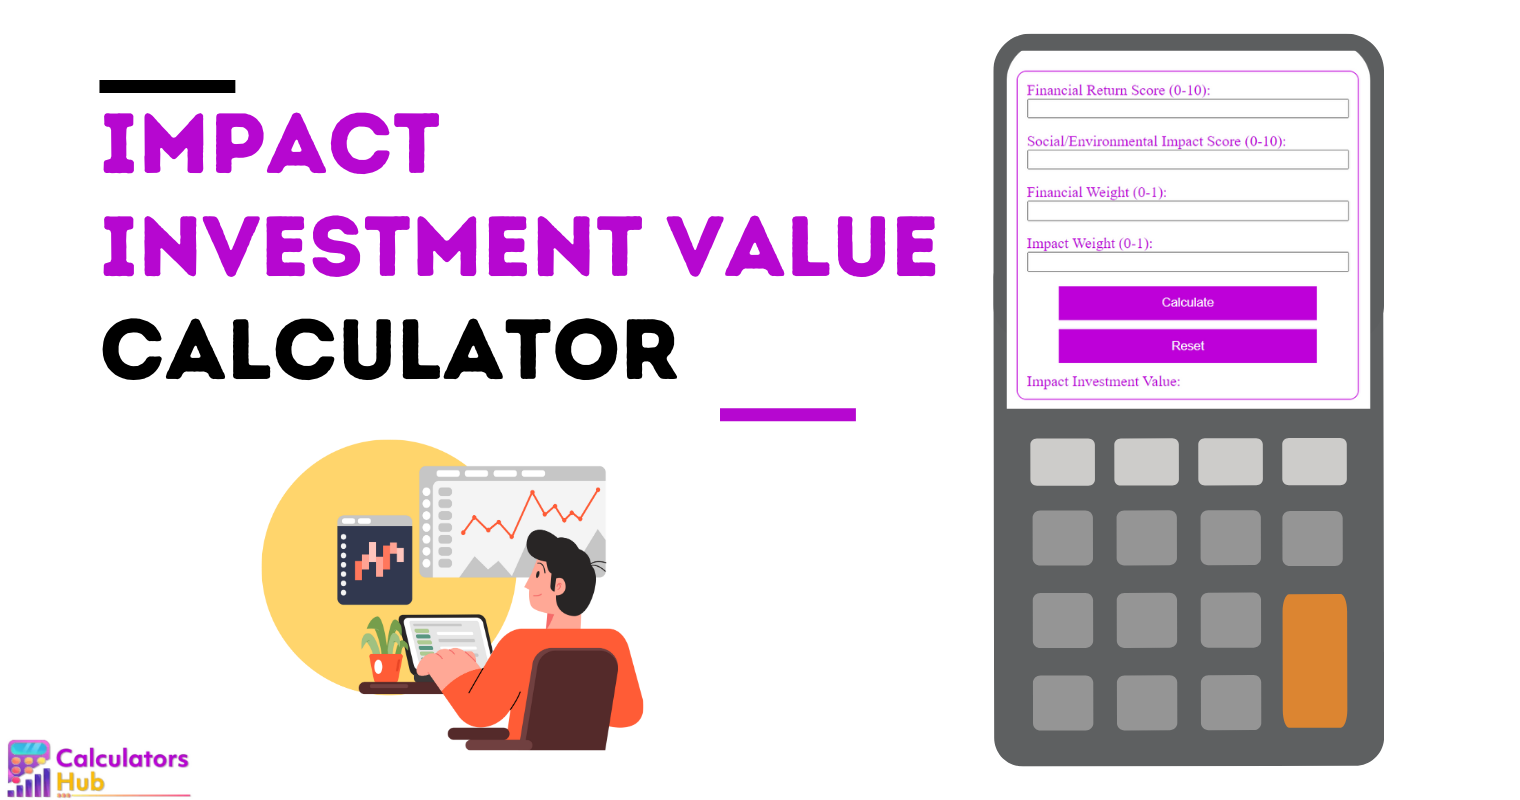 Impact Investment Value Calculator